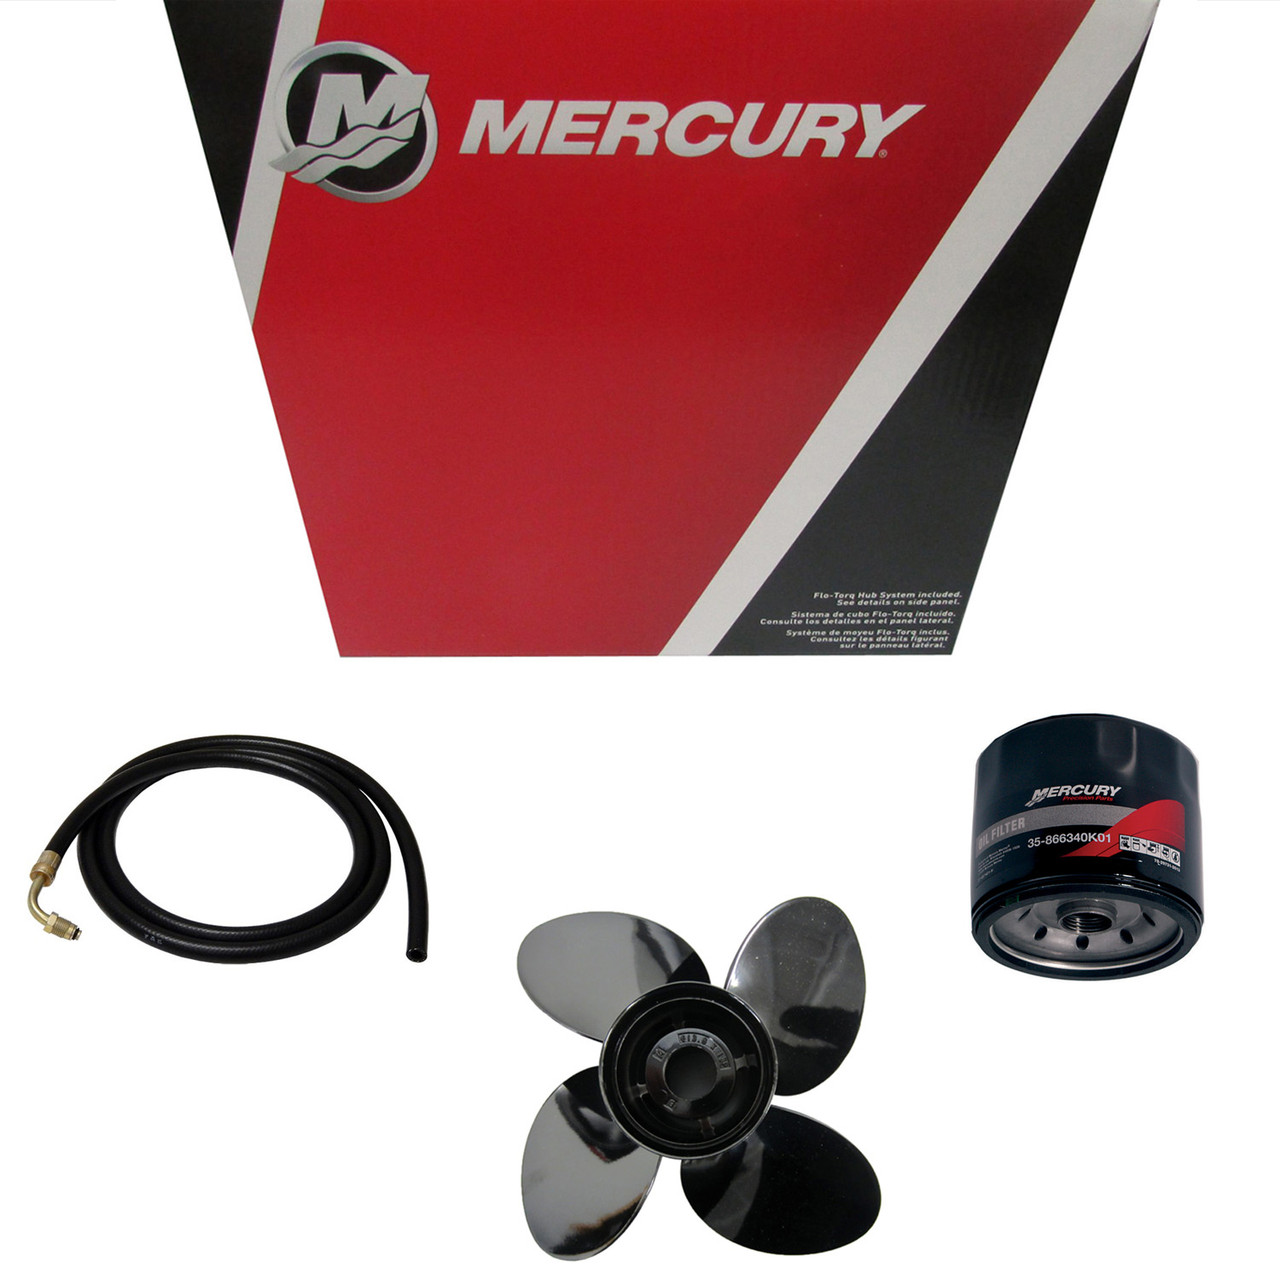 Mercury Marine / Mercruiser New OEM Bushing, 893392001